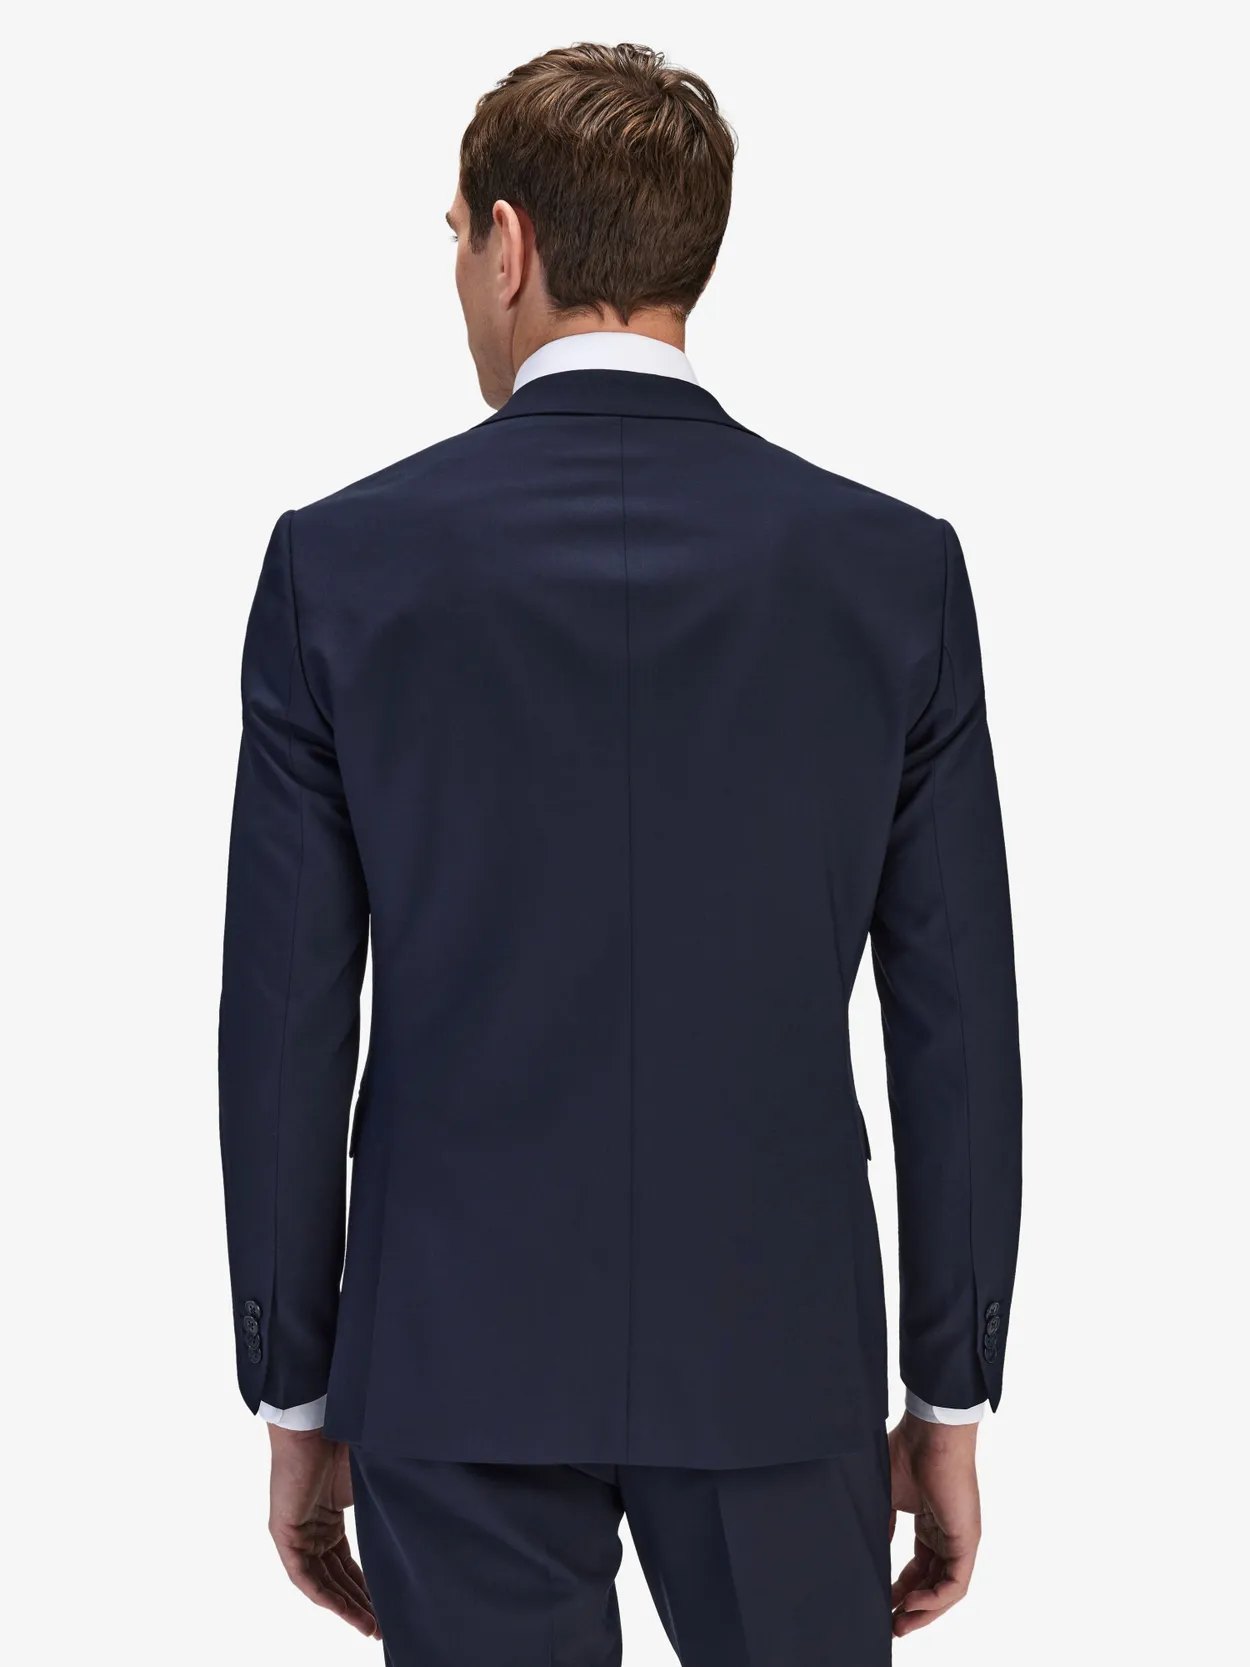 Image number 6 for product Blå Kostym & Skjorta